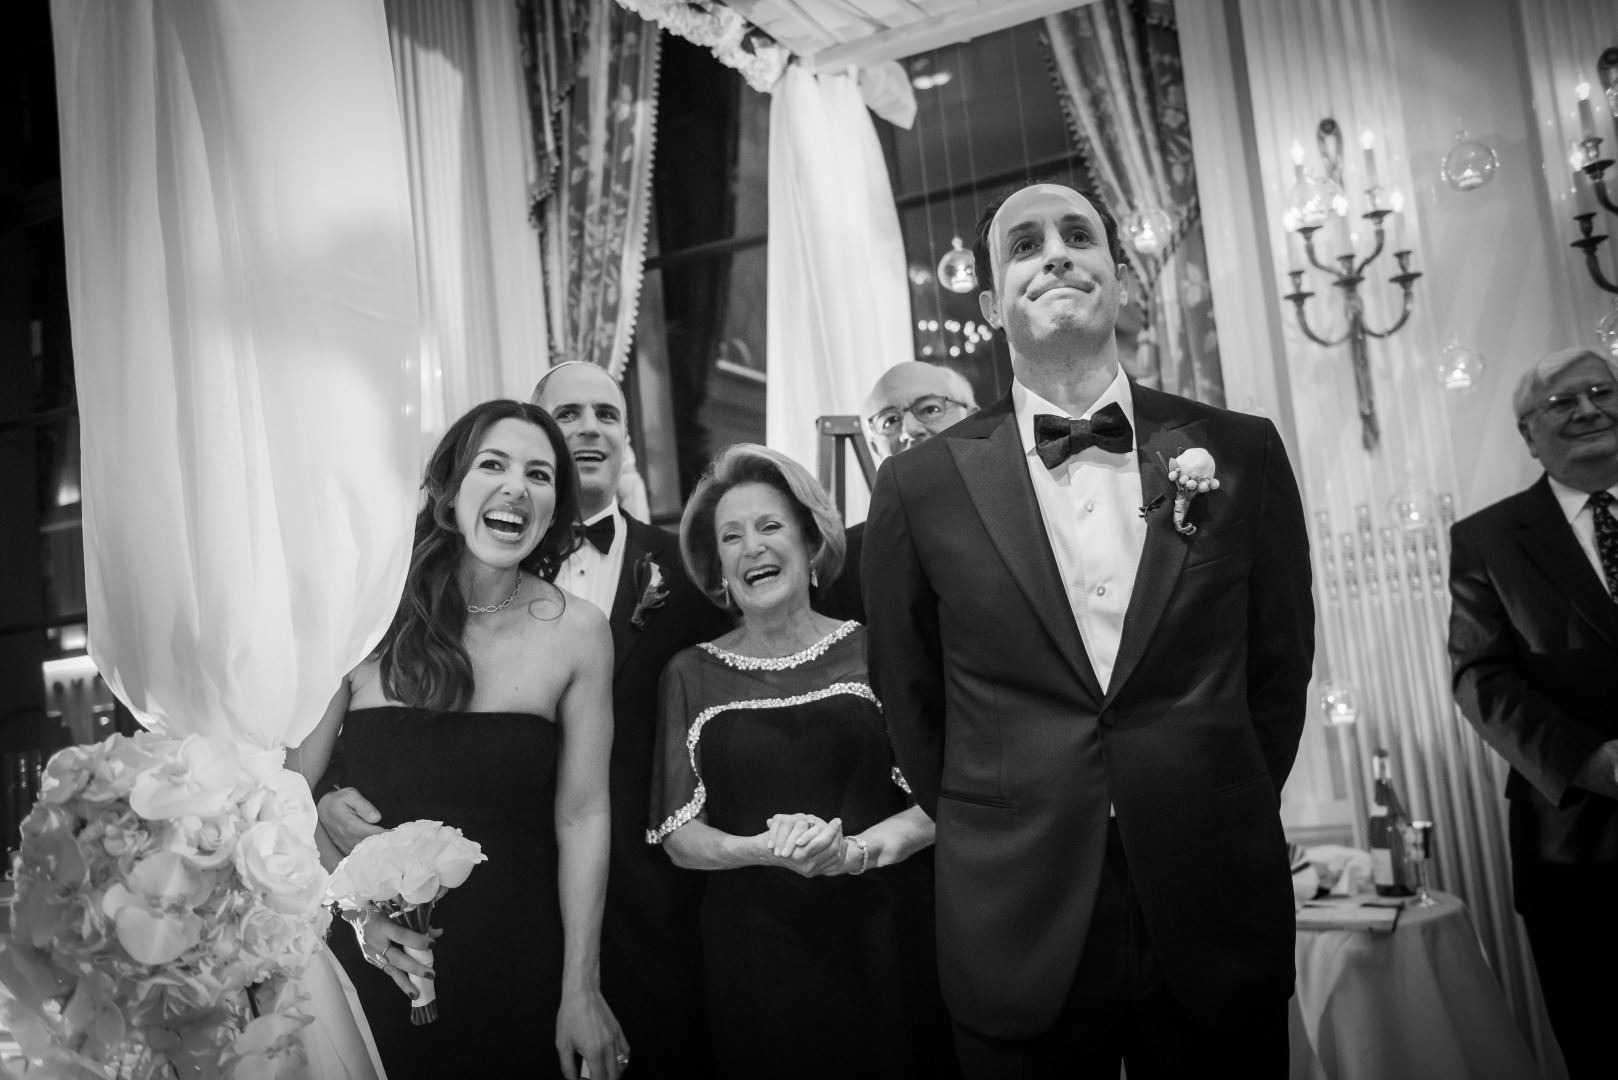 new york city artistic beautiful art wedding photography photographer photo groom bride emotional ketubah ceremony signing jewish parents celebrating mazel tov